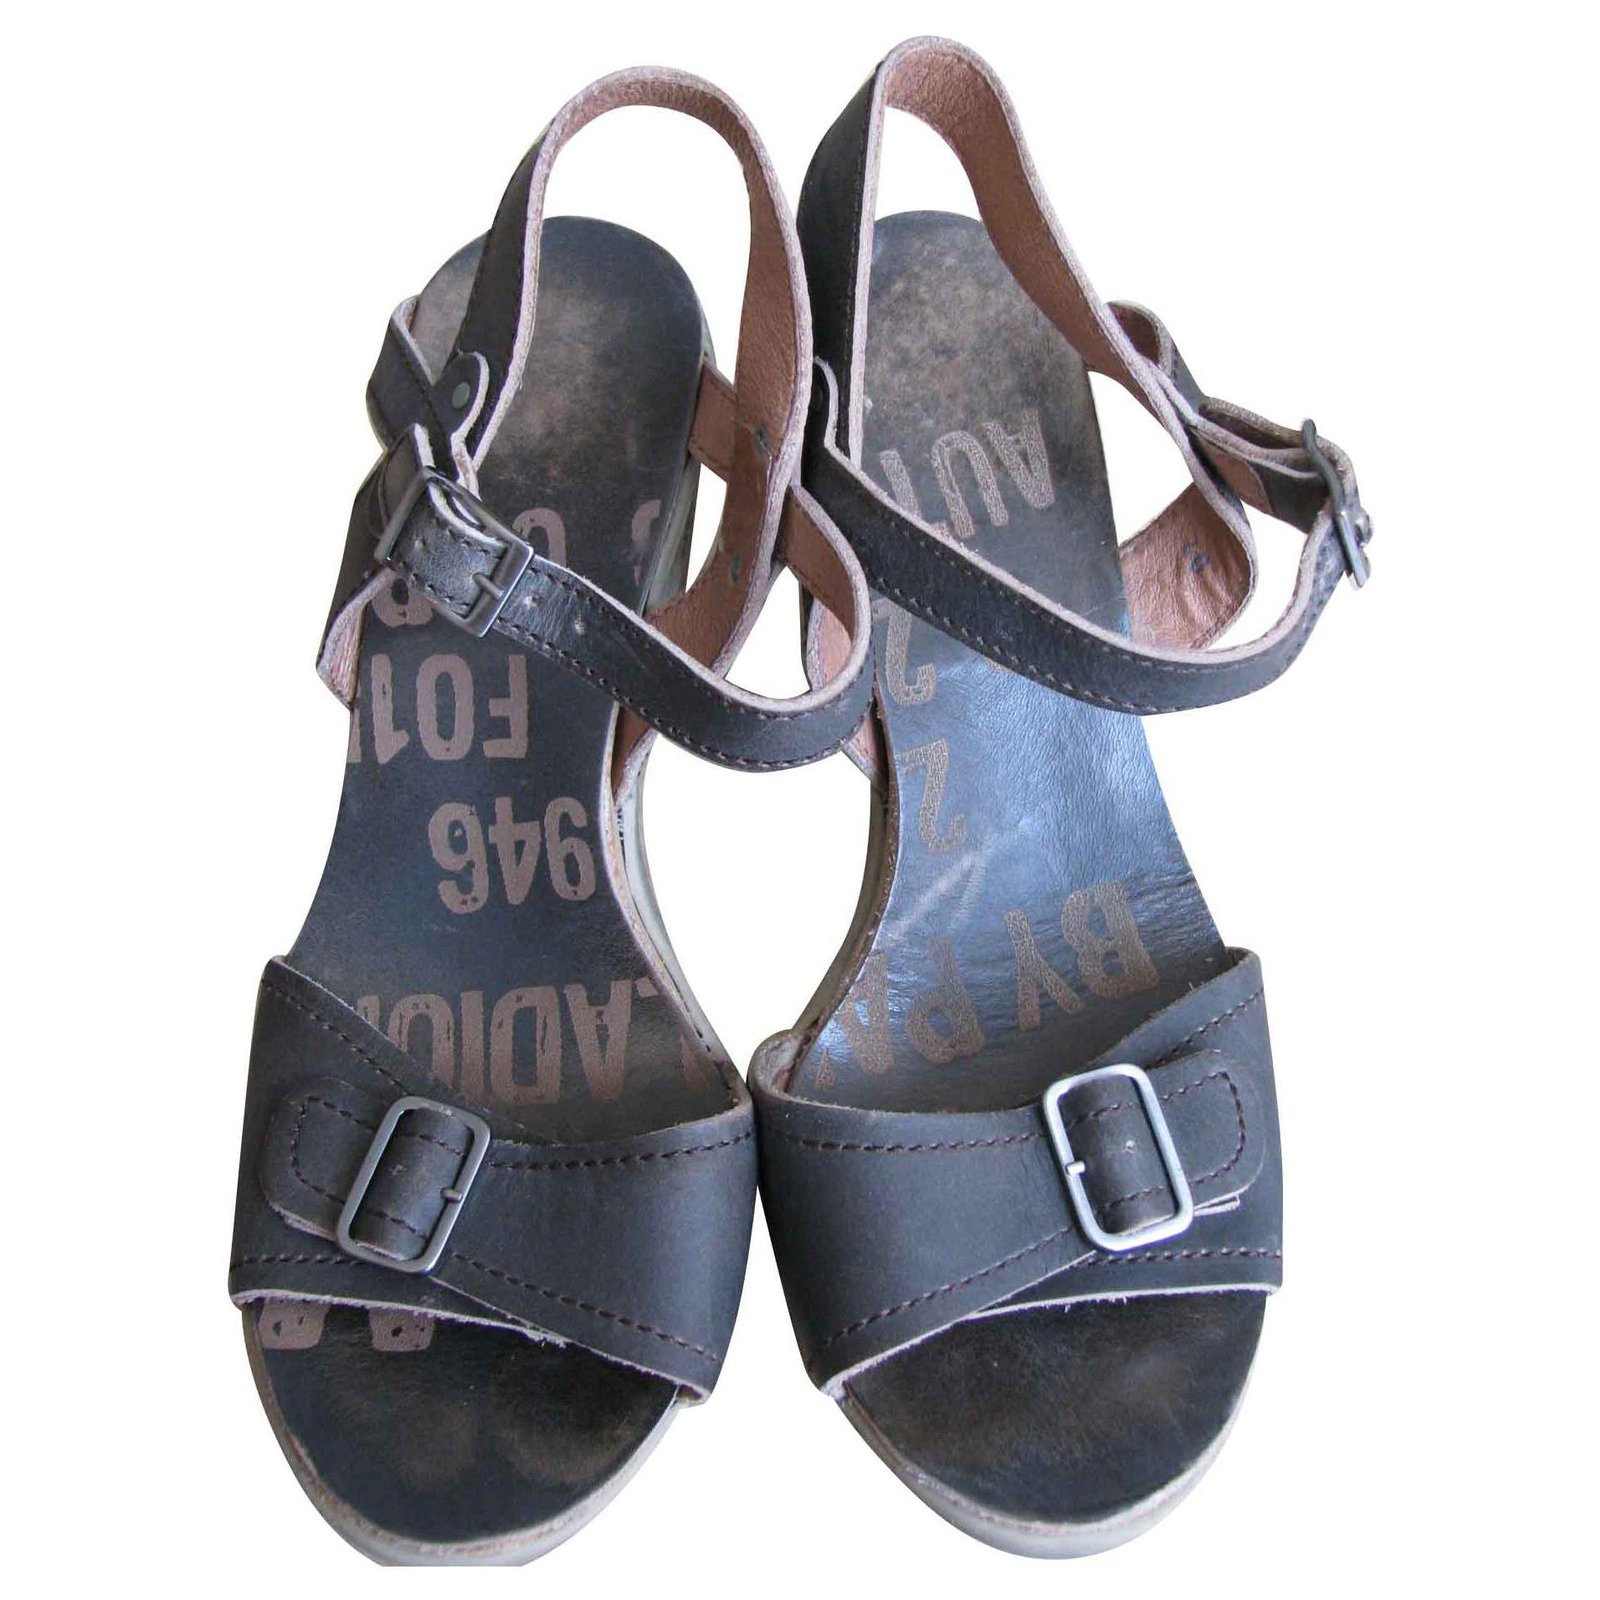 Palladium Sandals Sandals Leather Brown 